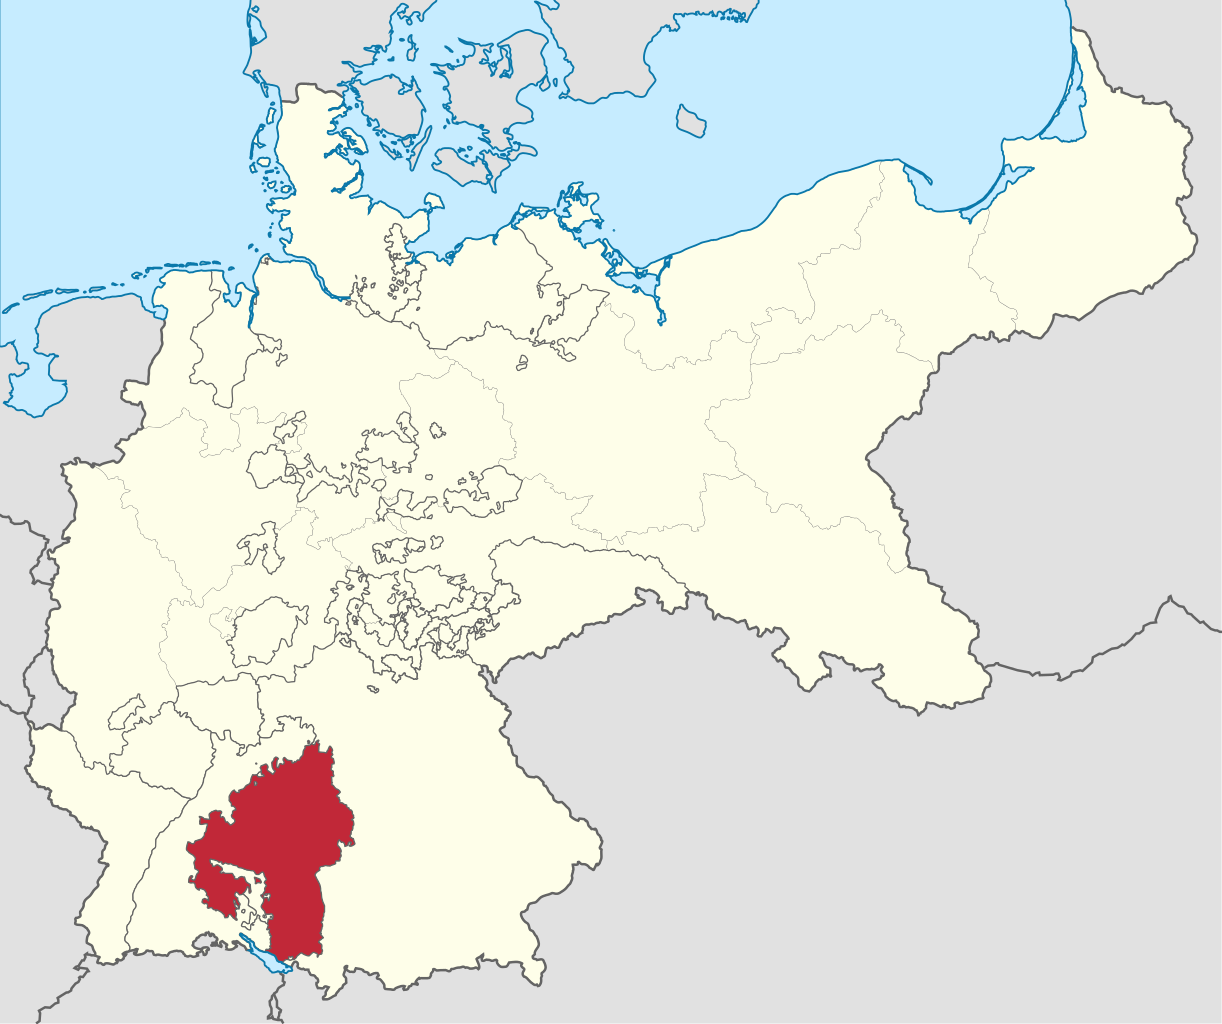 符騰堡王國在德意志帝國的位置